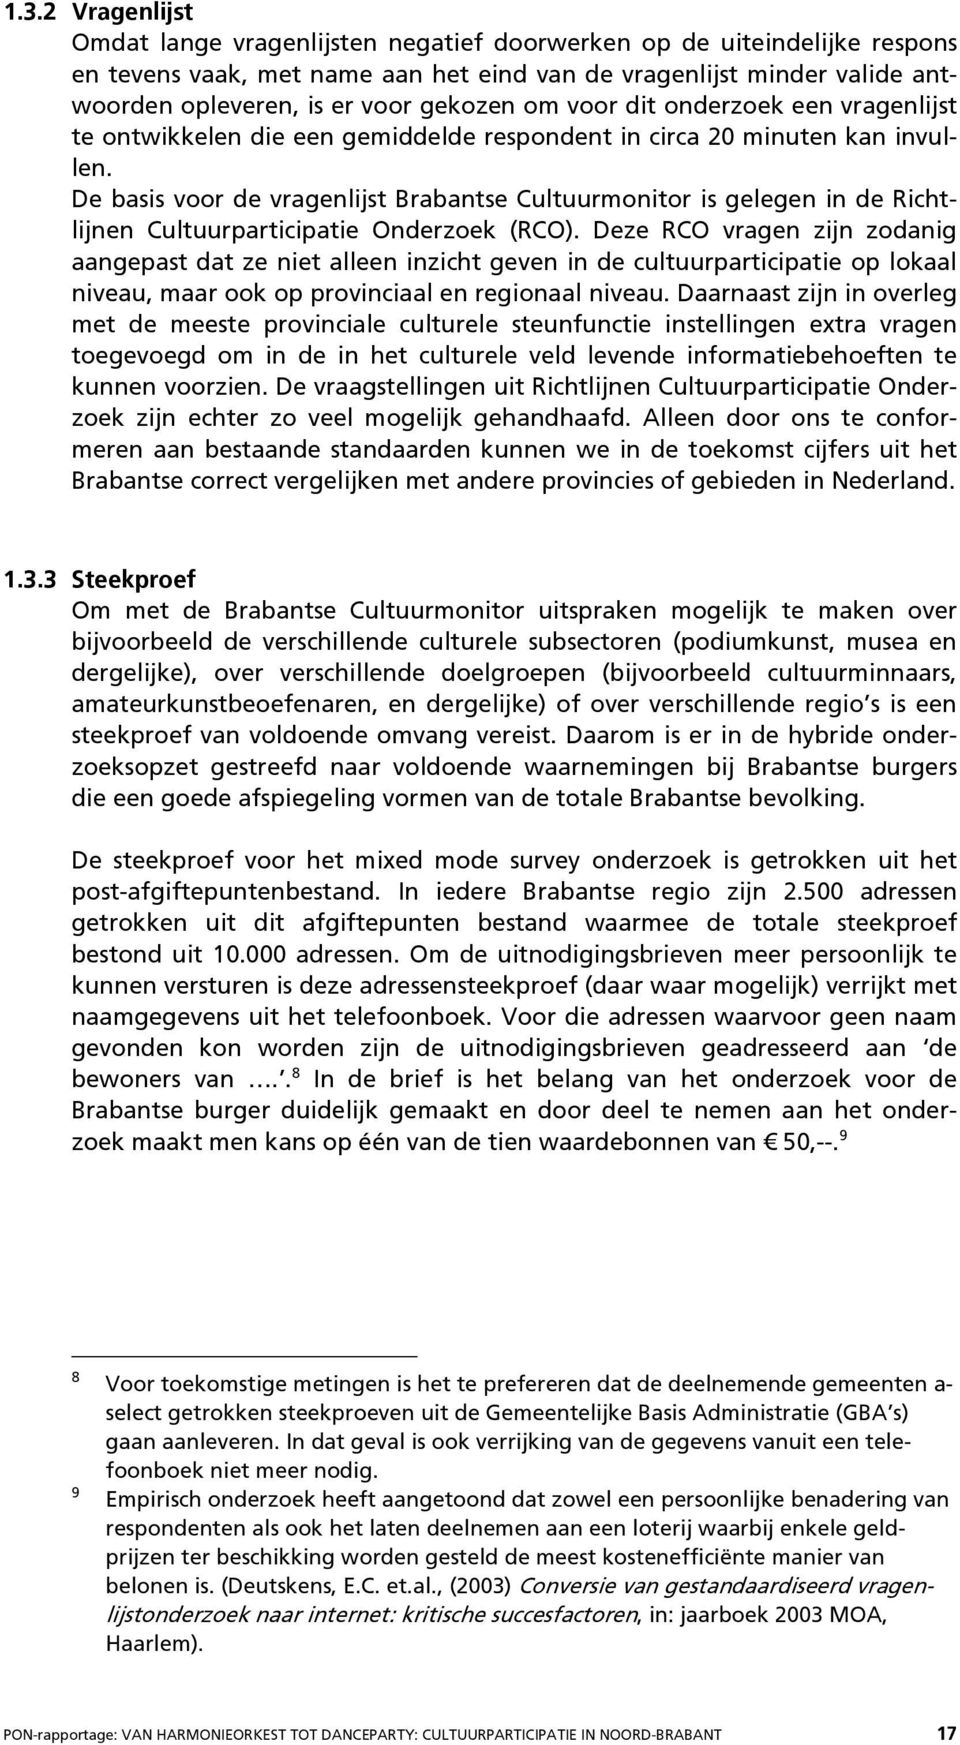 De basis voor de vragenlijst Brabantse Cultuurmonitor is gelegen in de Richtlijnen Cultuurparticipatie Onderzoek (RCO).